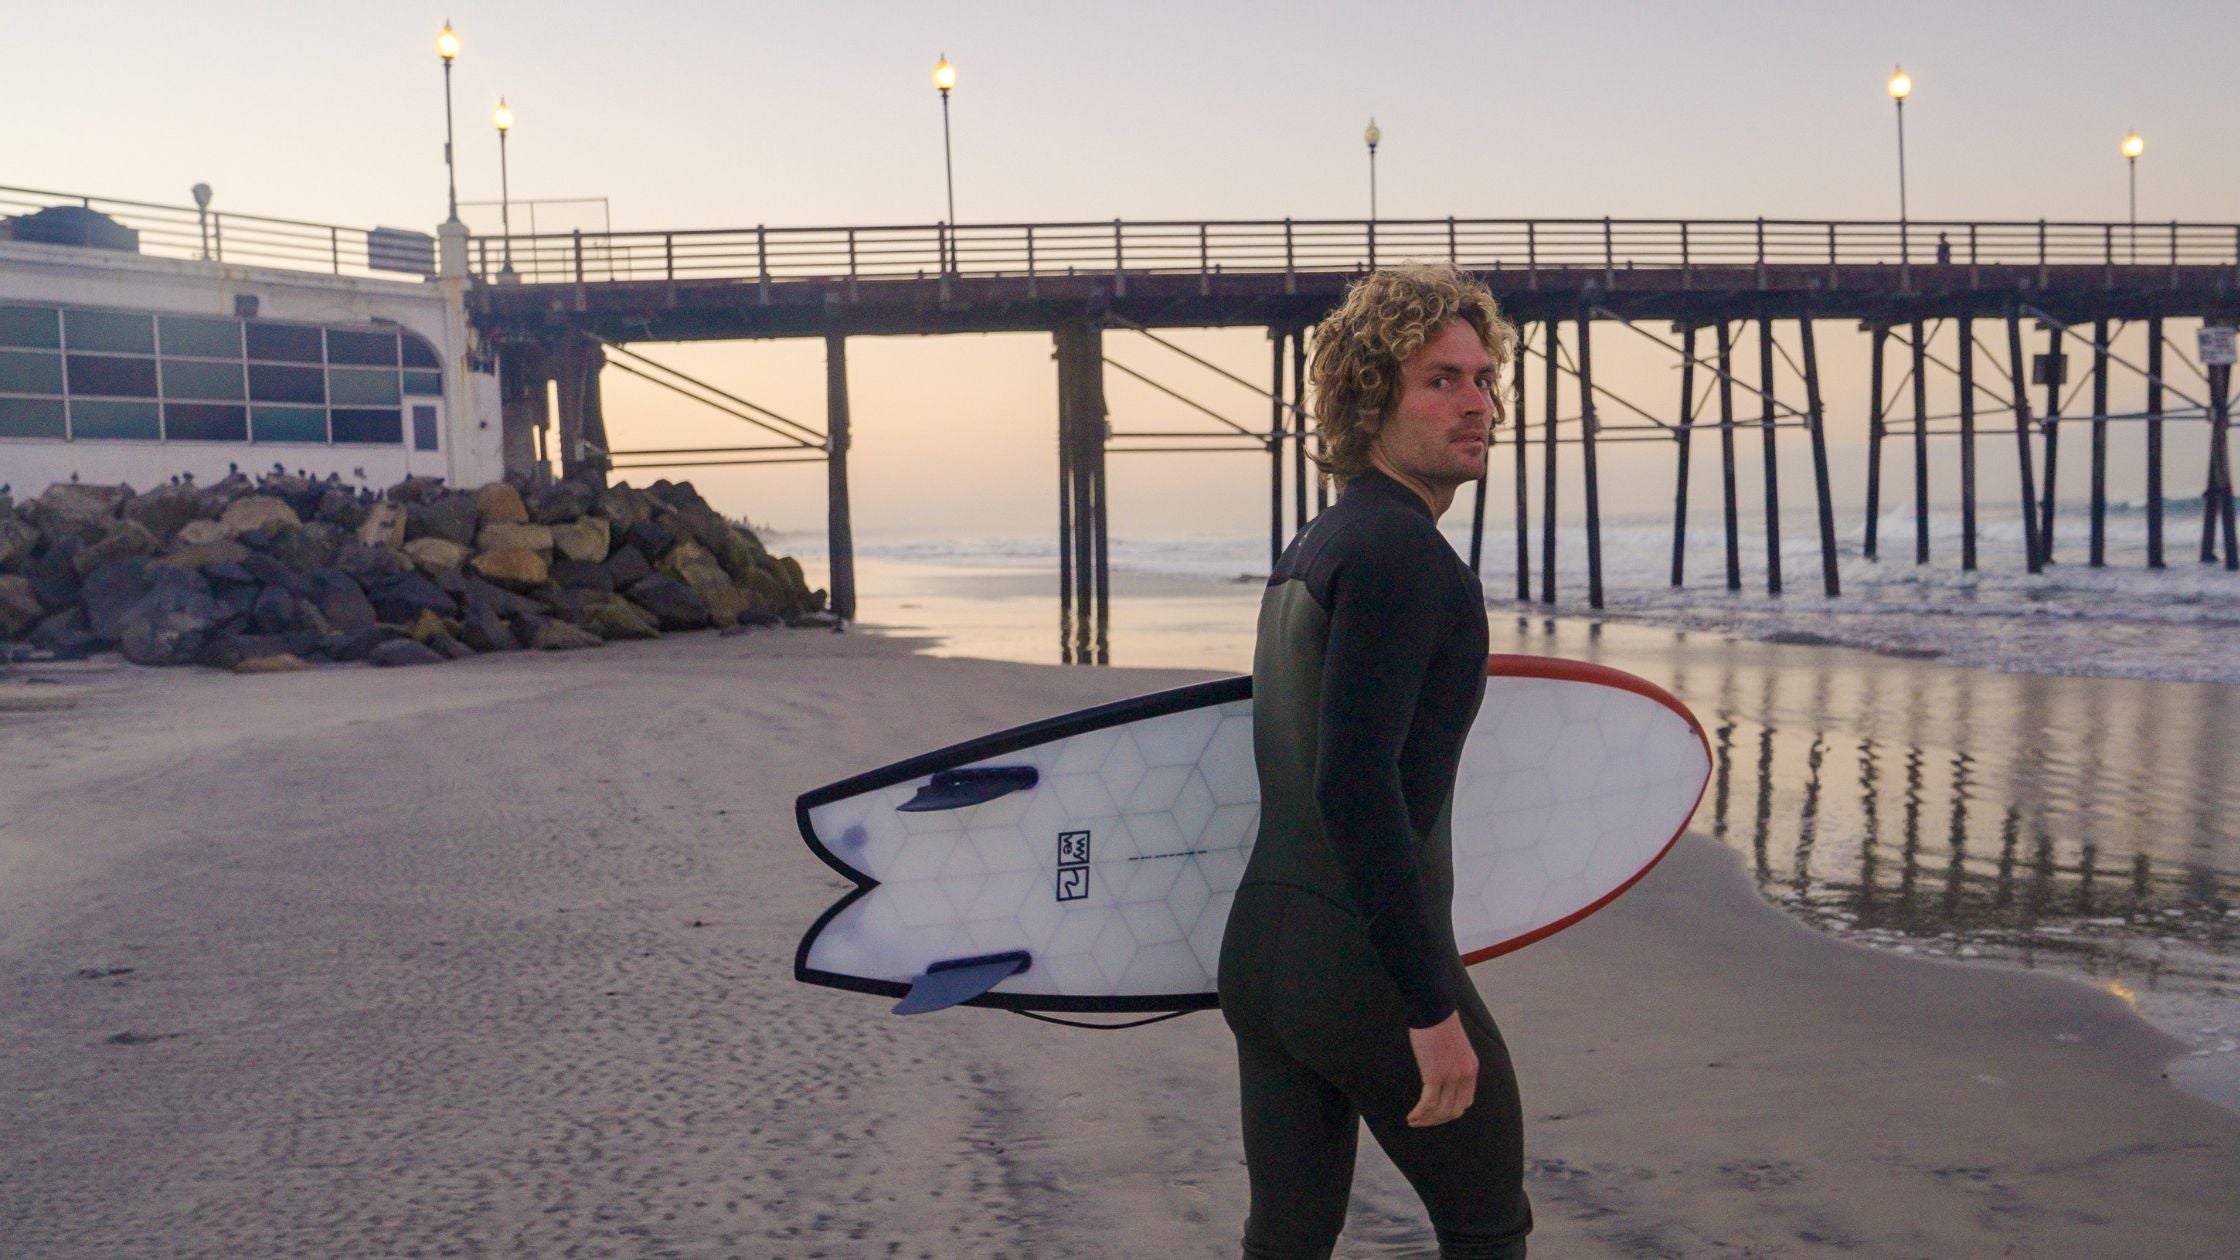 Tabla de surf Fish - Tabla de surf ecológica - Tabla de surf Wyve en California